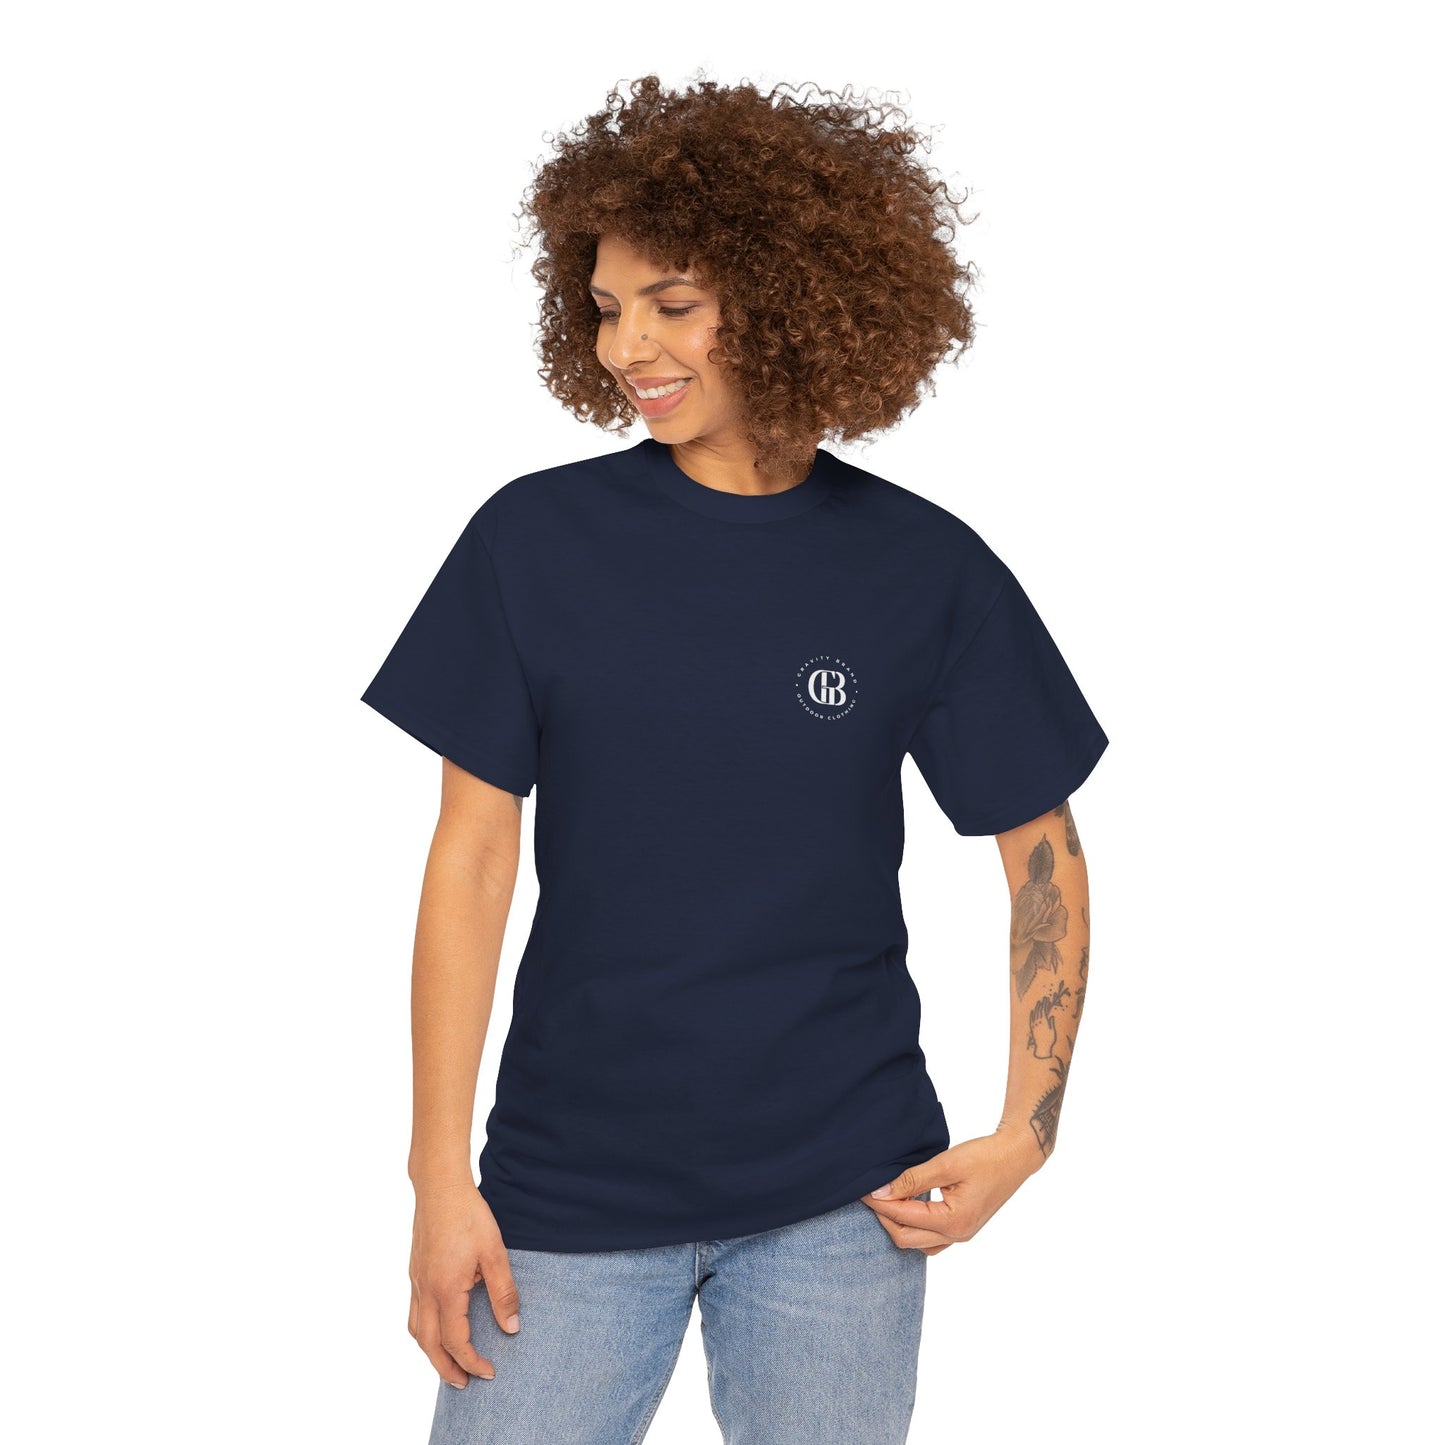 SLEEK TEE | Camiseta de algodón 100% - Unisex